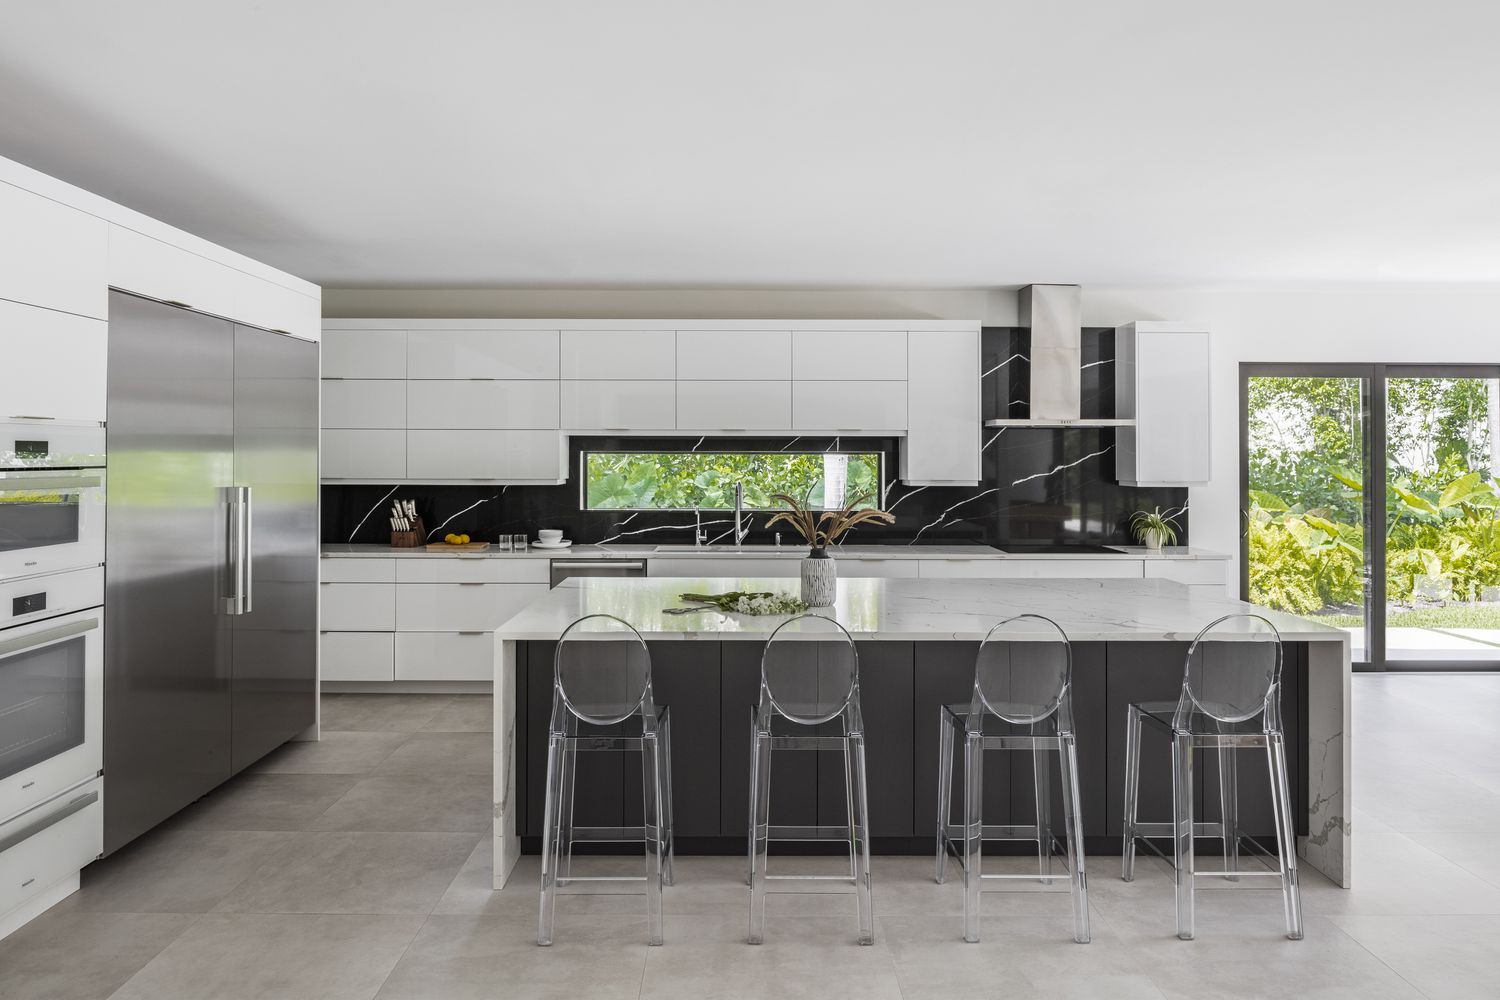 Le sol gris recouvre une cuisine qui comprend également des armoires modernes blanches épurées sans boutons